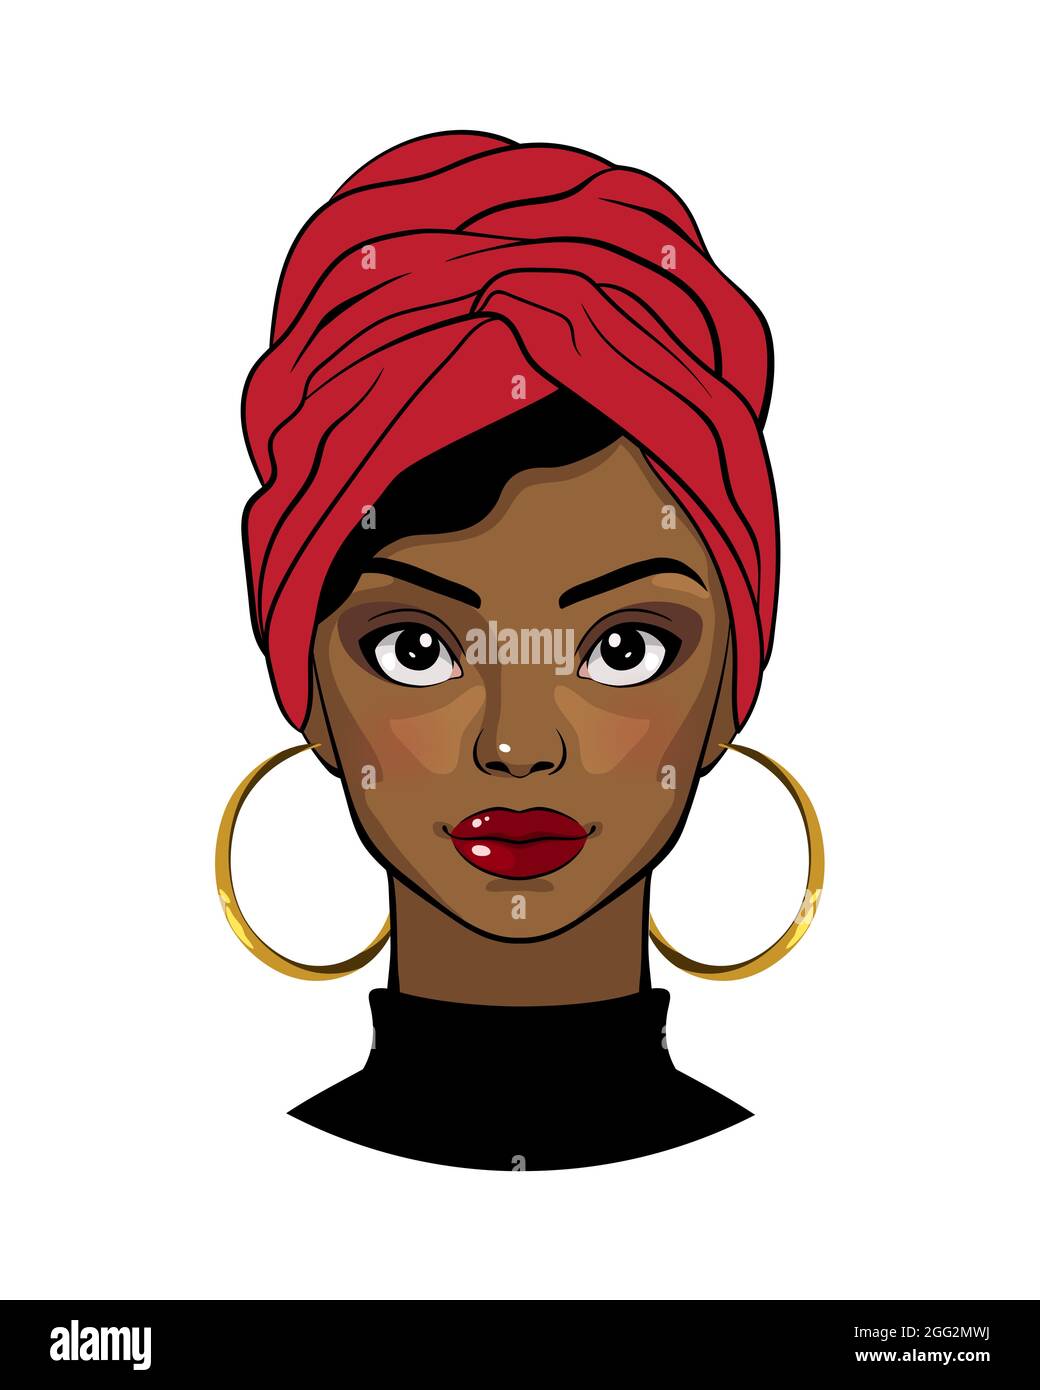 Belle femme noire. Caricature afro-américaine jeune fille portant une tête rouge et des boucles d'oreilles rondes. Illustration de mode sur fond blanc. Illustration de Vecteur